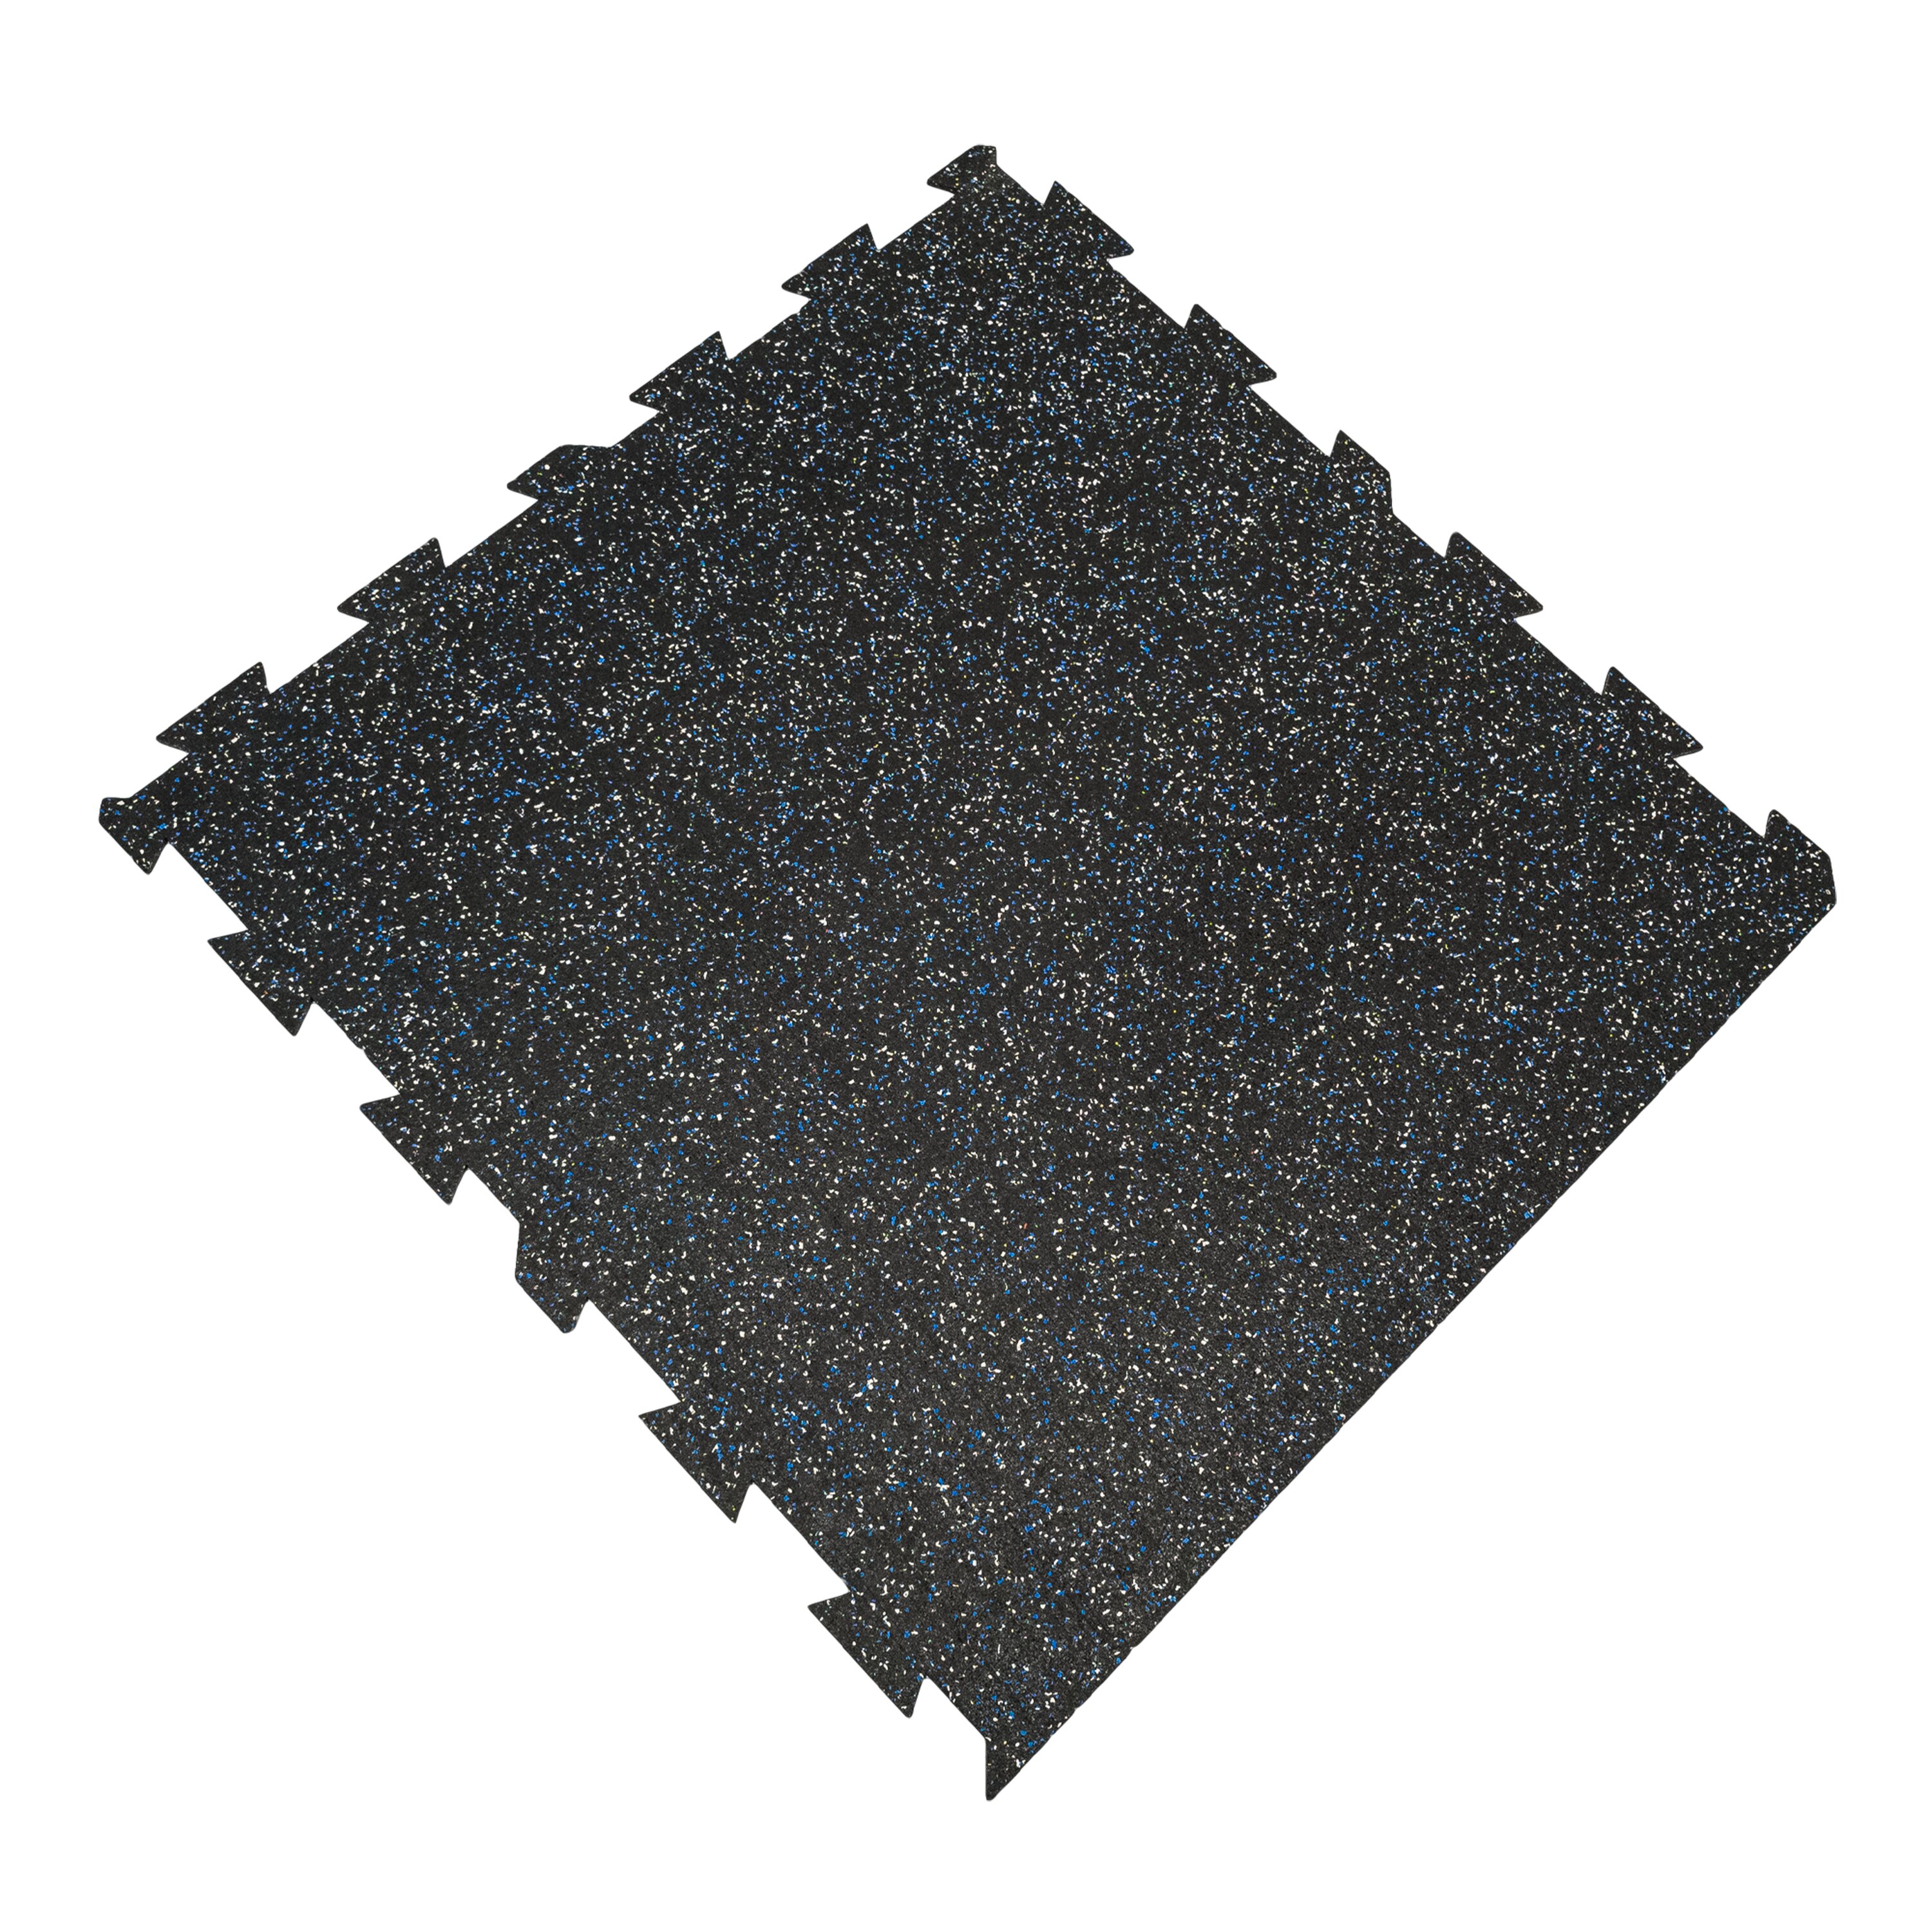 Černo-bílo-modrá gumová puzzle modulová dlaždice (okraj) FLOMA SF1050 FitFlo - délka 100 cm, šířka 100 cm, výška 0,8 cm